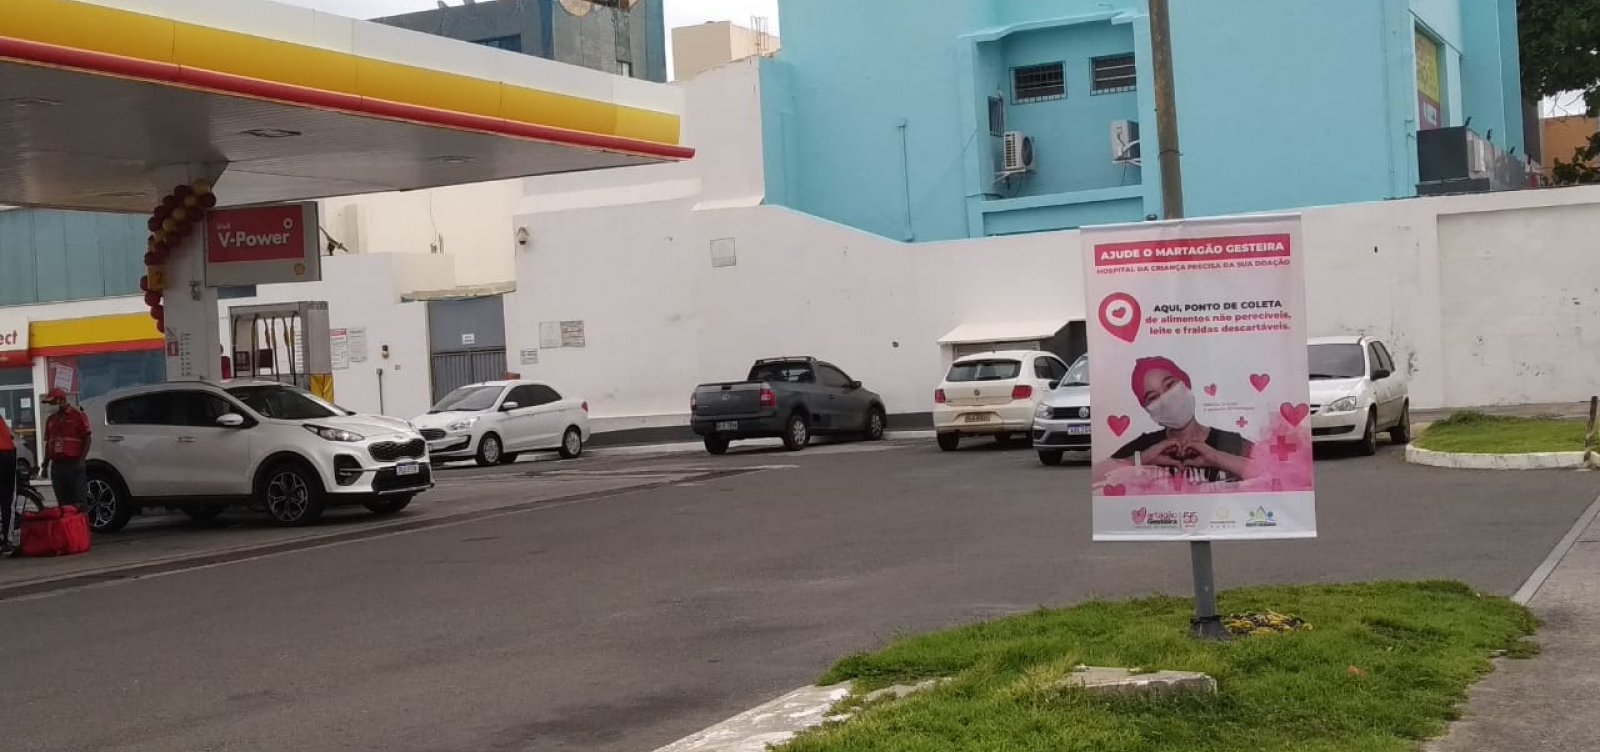 Postos de combustíveis arrecadam alimentos e fraldas para o Hospital Martagão Gesteira; veja como doar